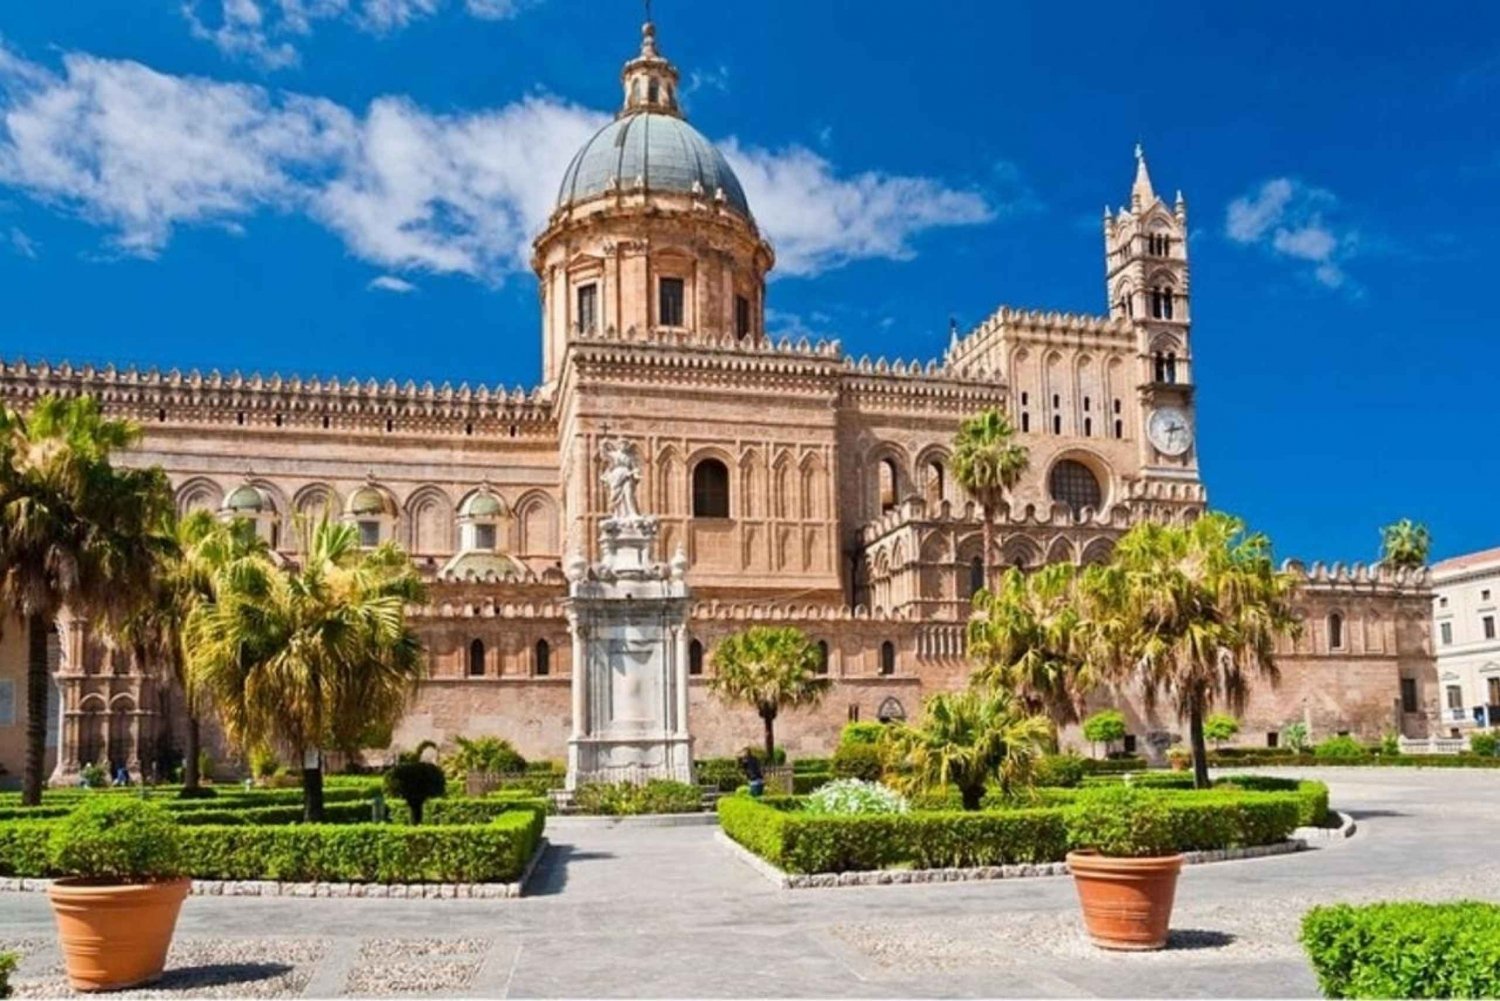 Palermo: historyczne rynki i zabytki - piesza wycieczka